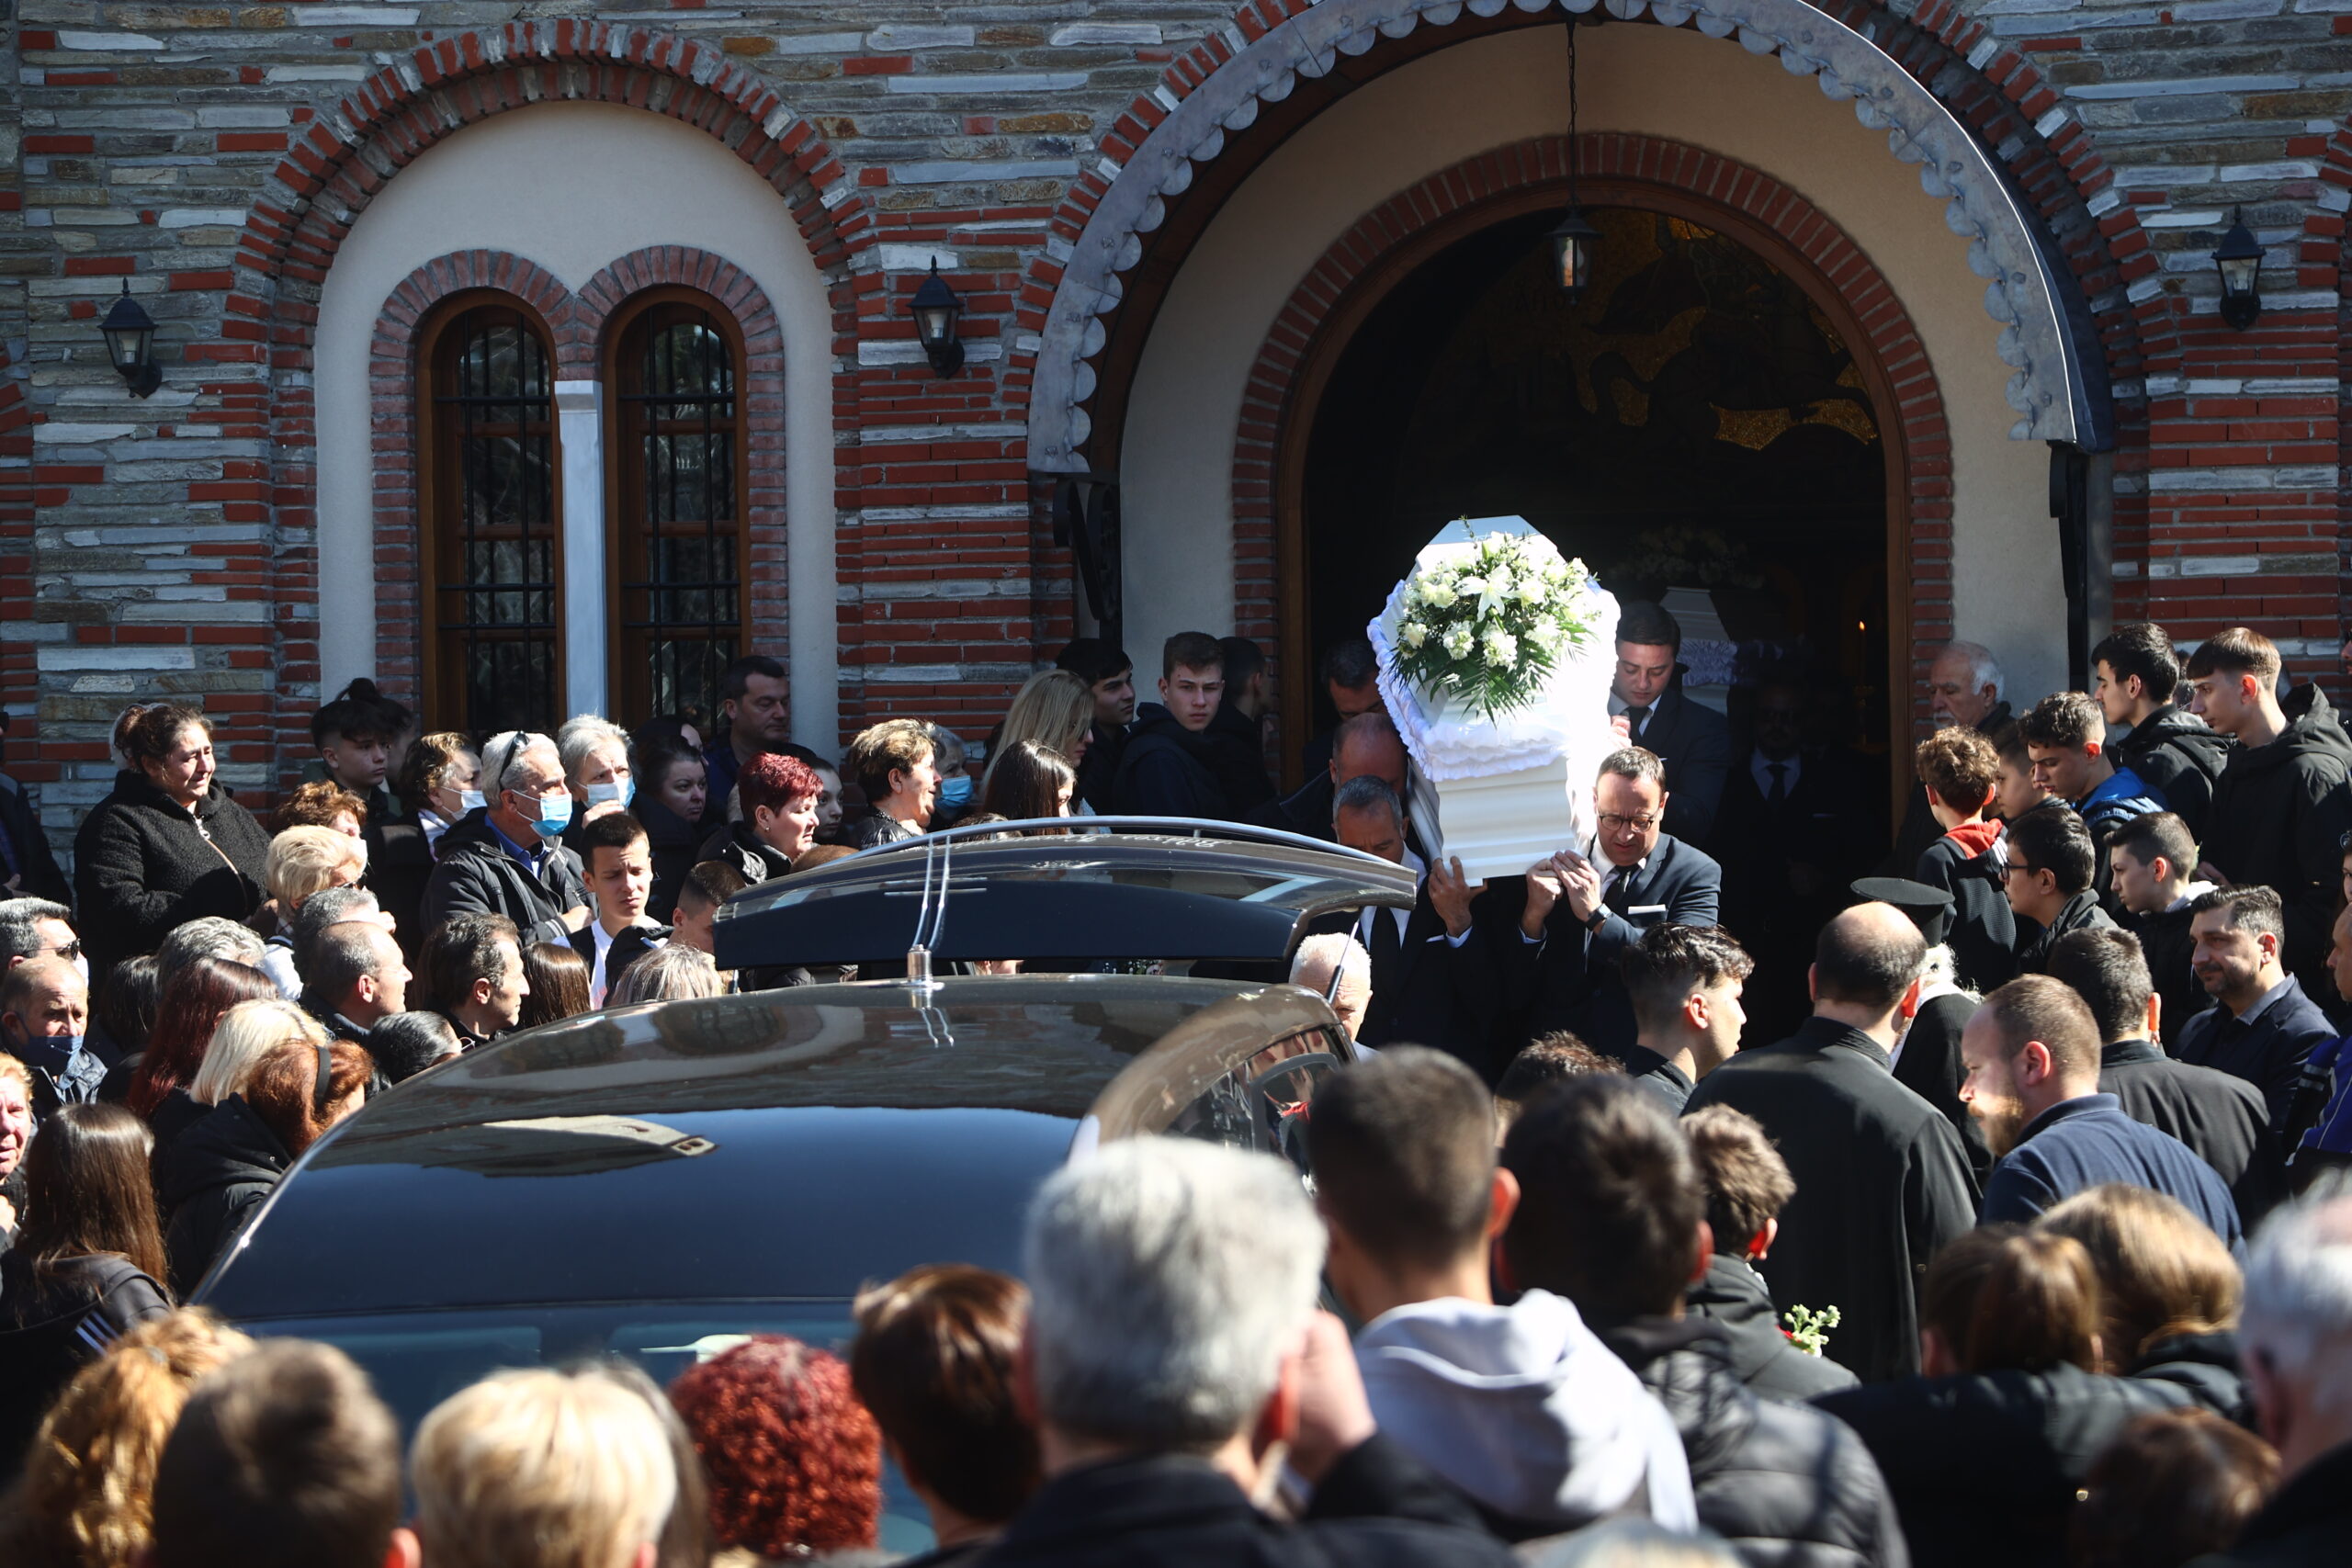 Σύγκρουση τρένων Τέμπη: Ασύλληπτος πόνος στις κηδείες των θυμάτων – Όλη η πόλη στο τελευταίο «αντίο»